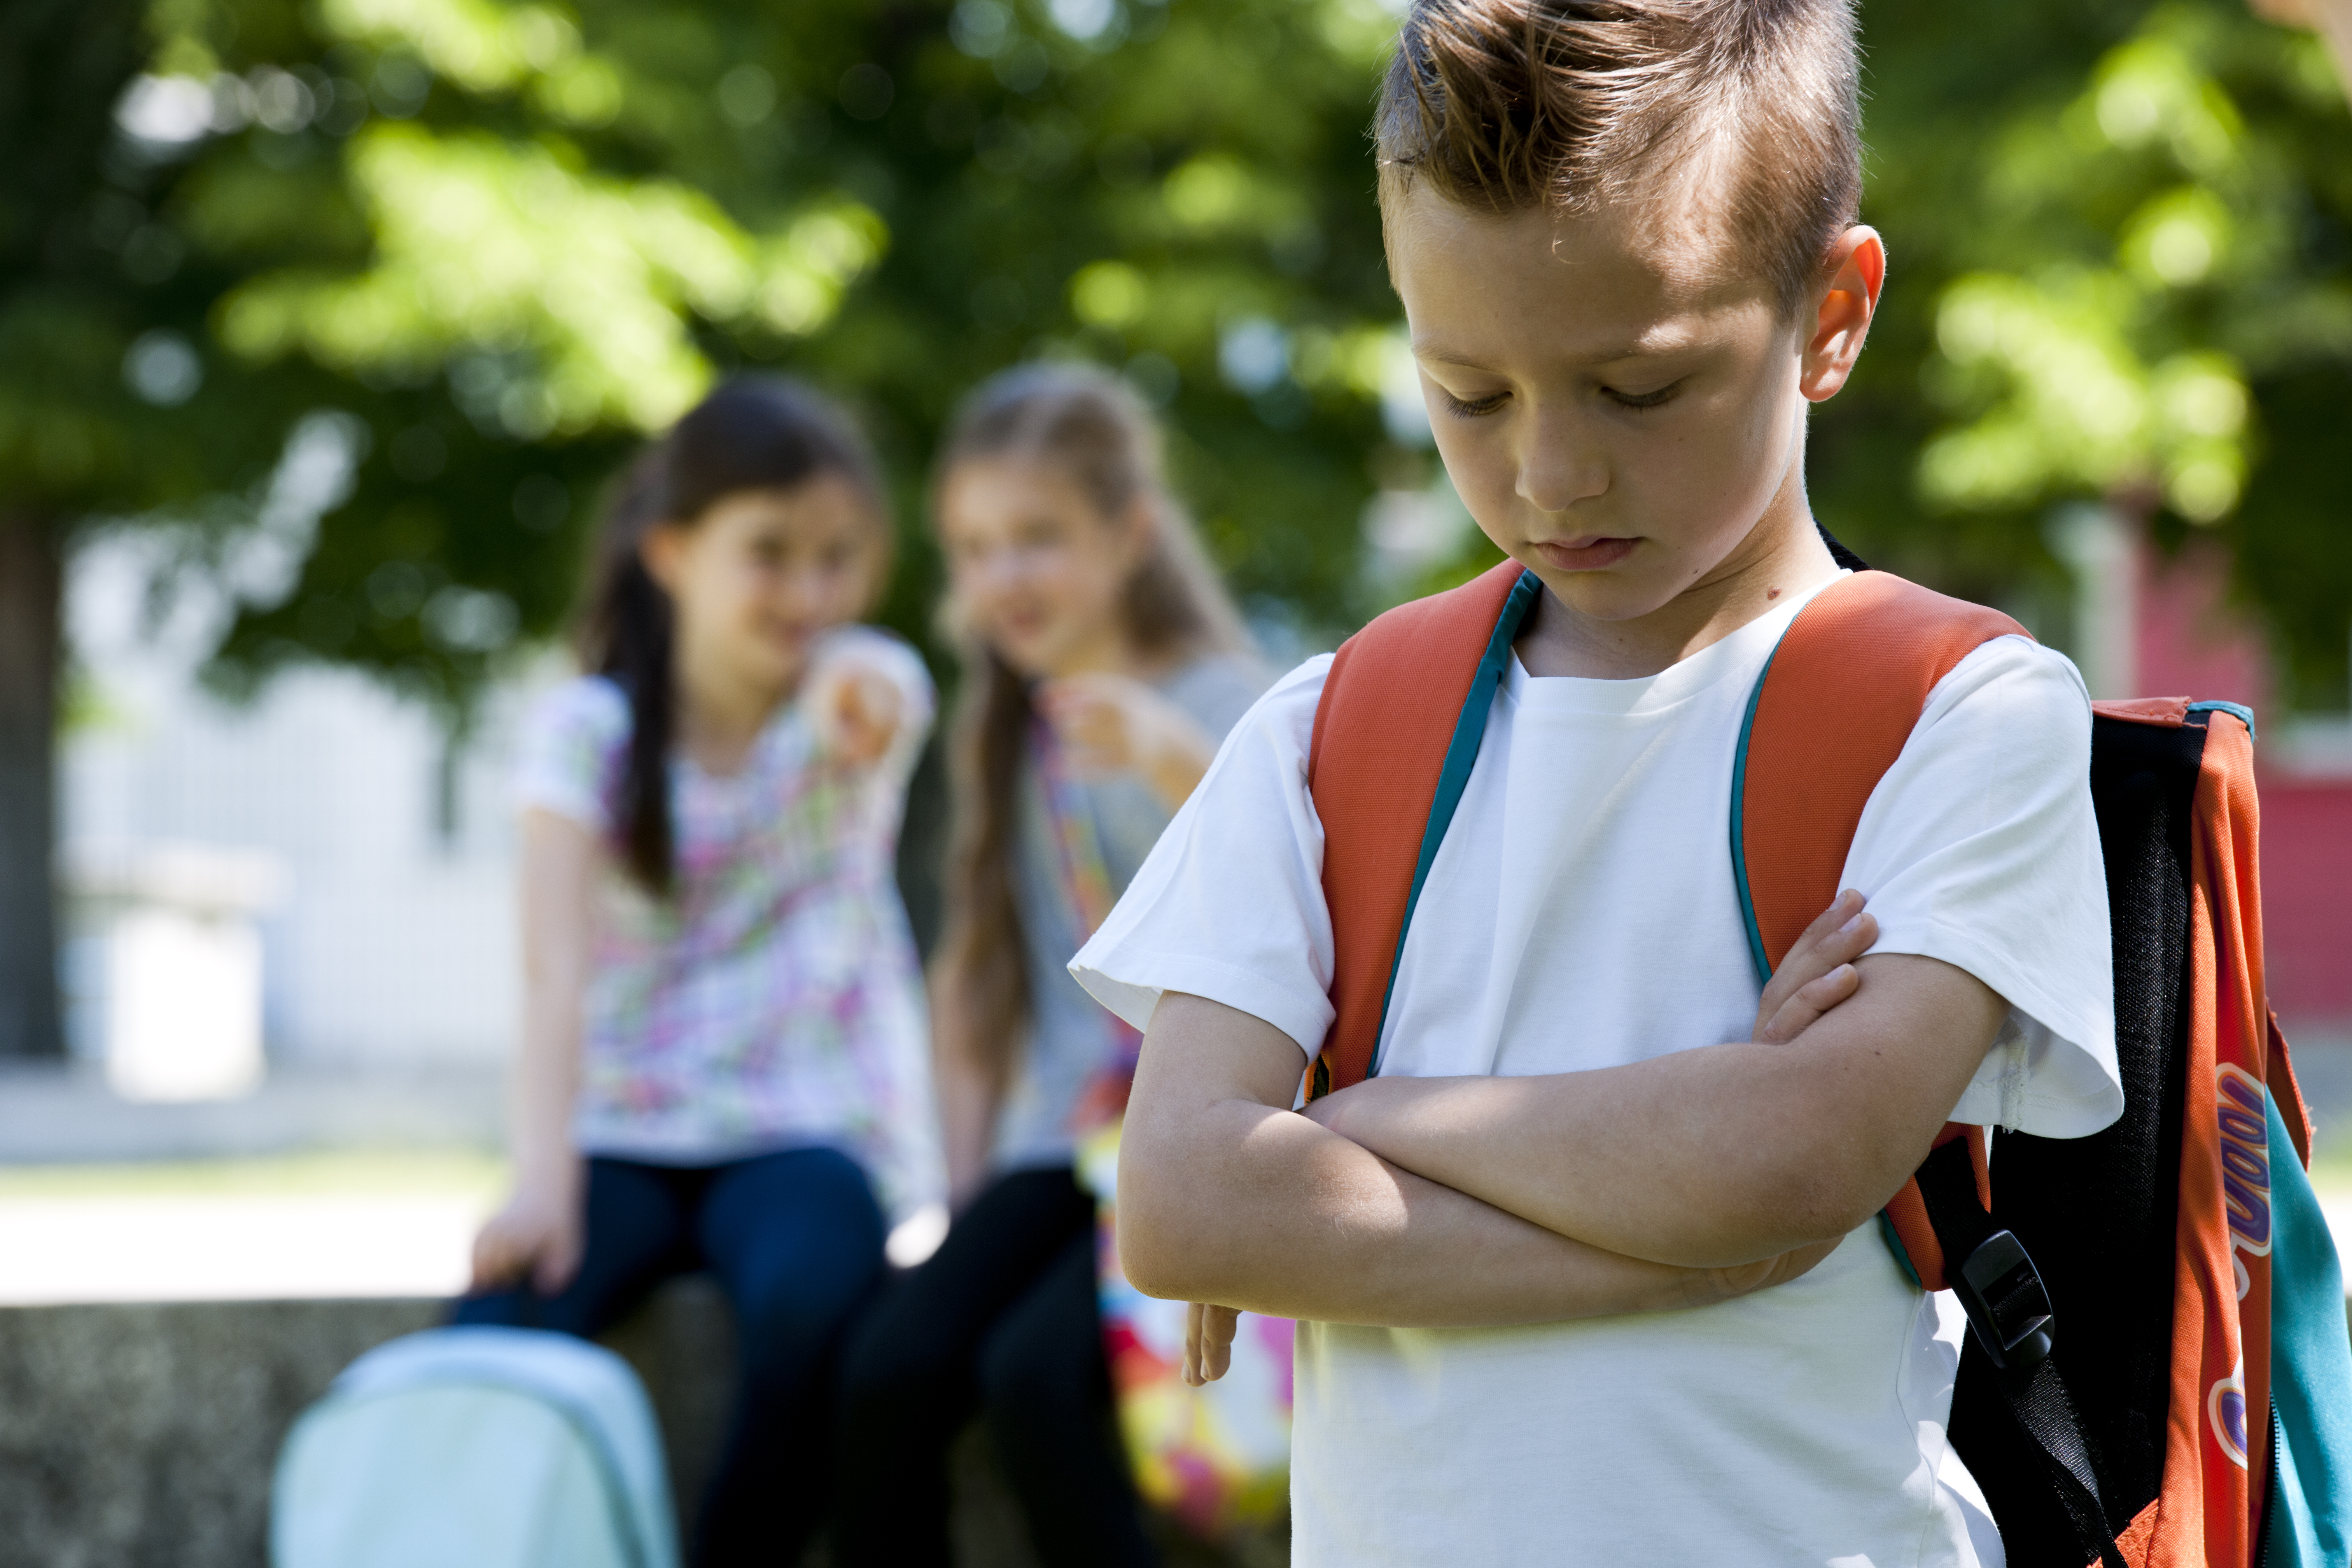 A bullied boy | Source: Shutterstock